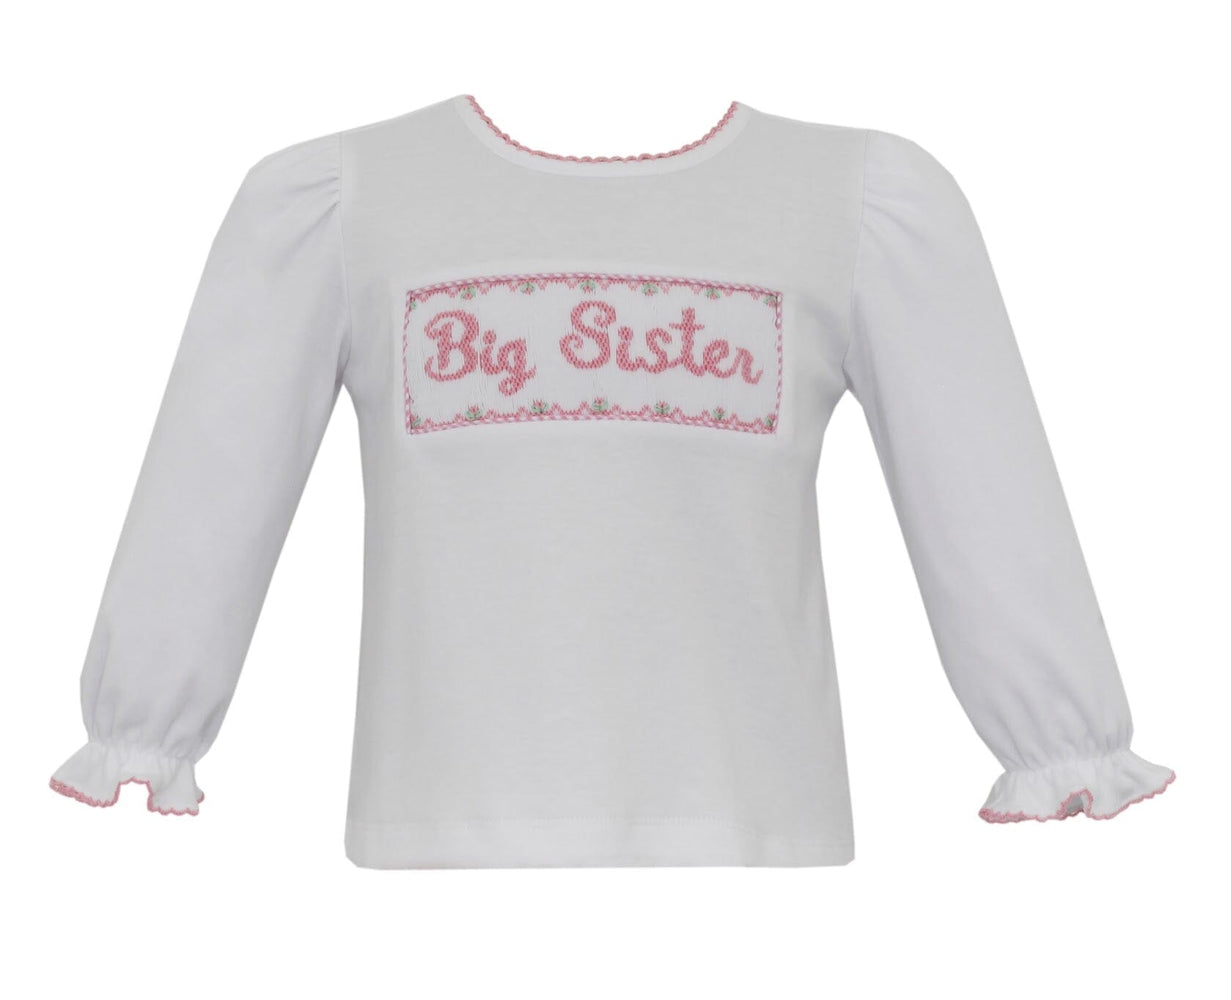 Big Sister Shirt Girl Shirt Velani 